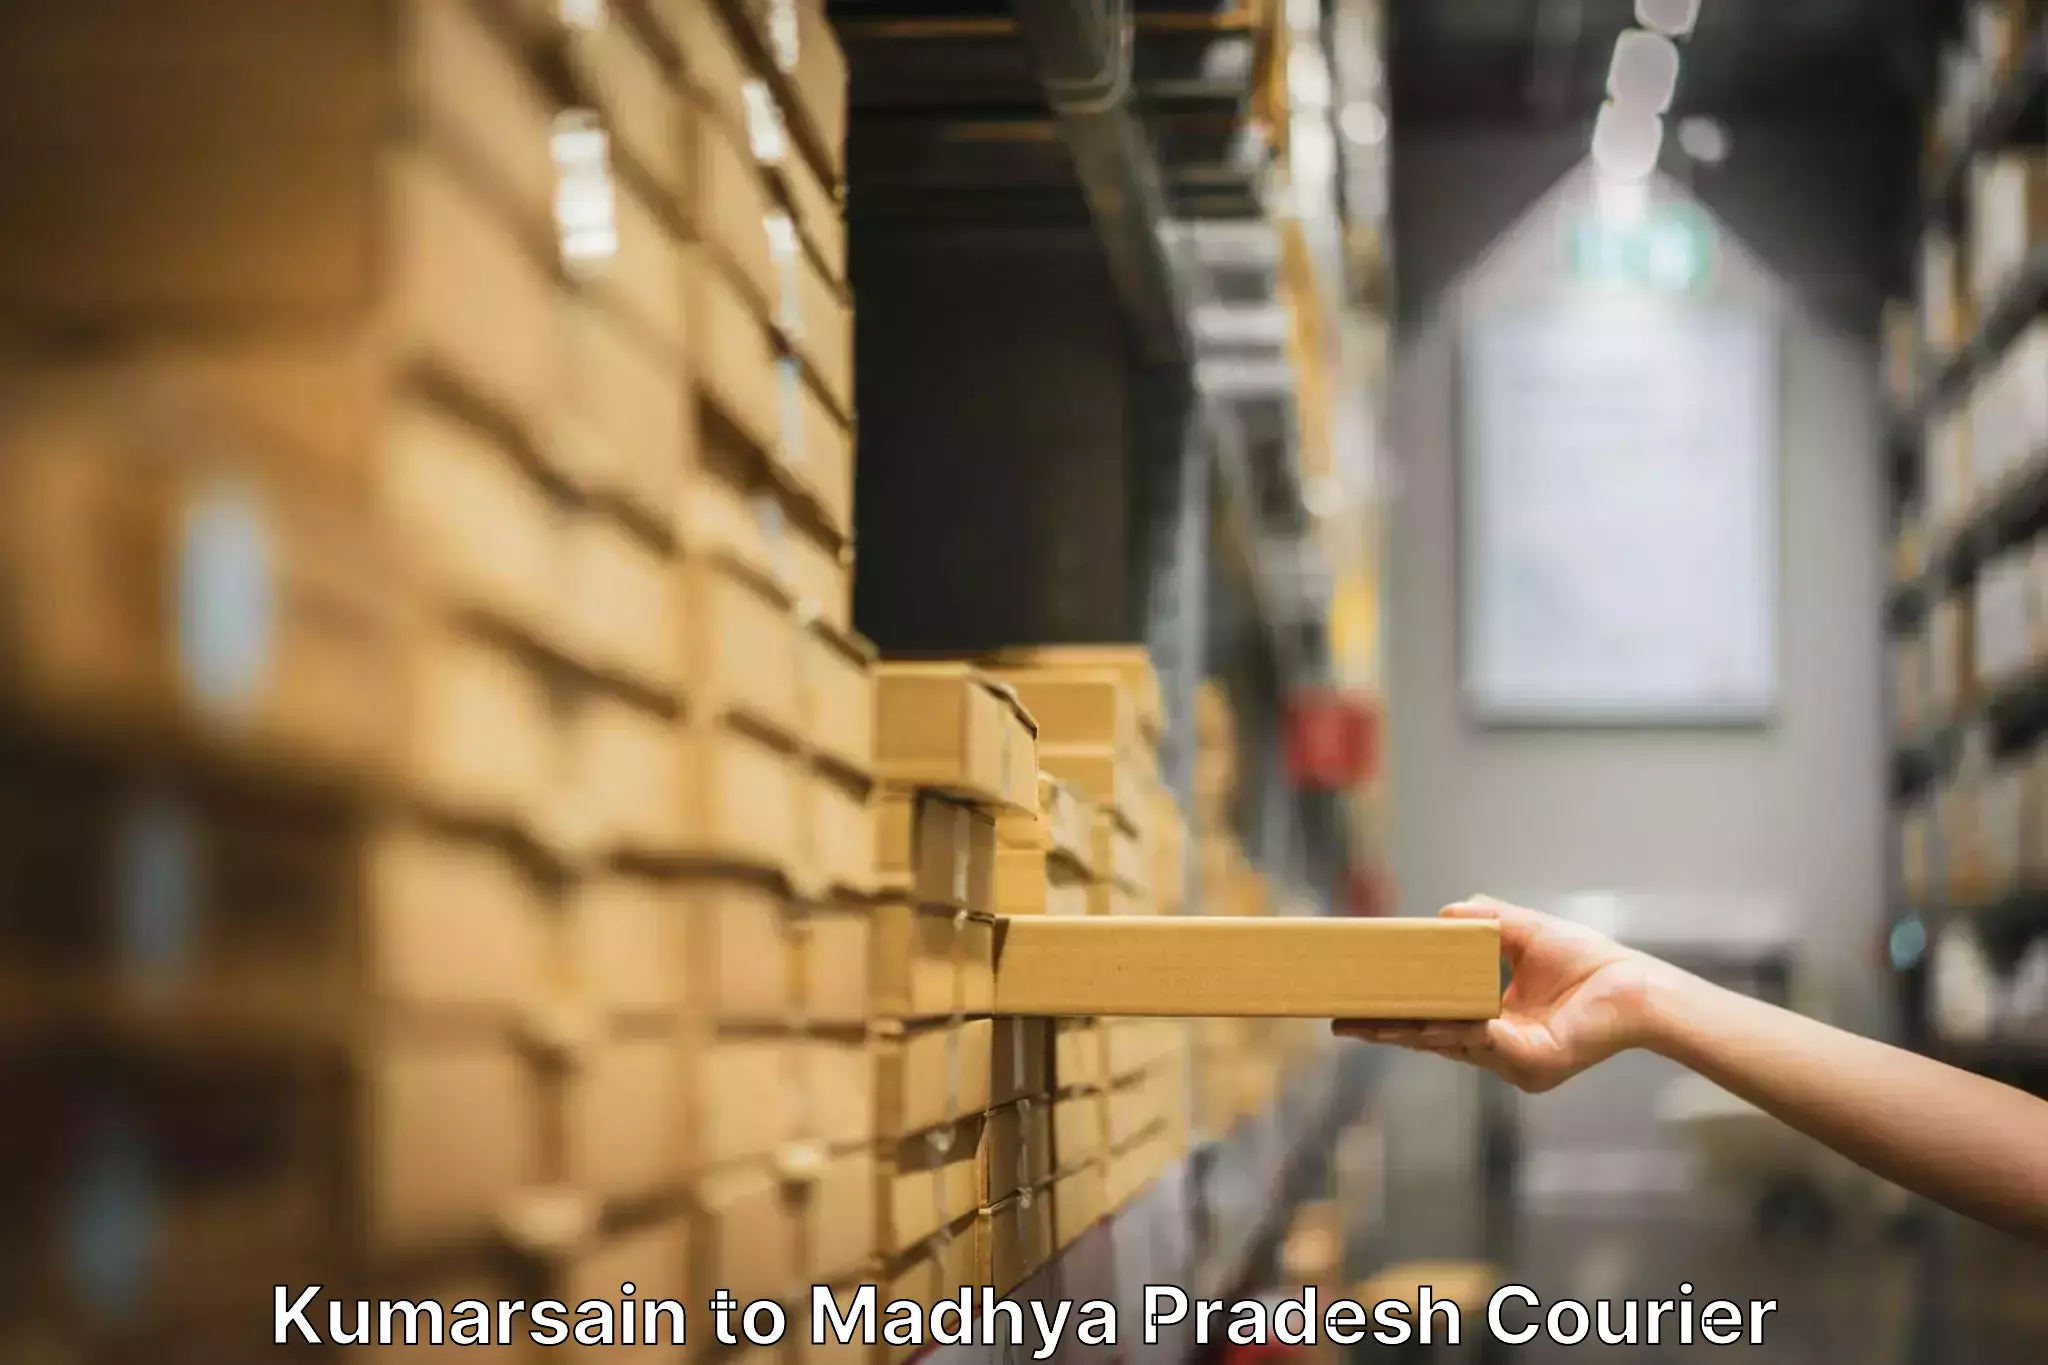 Furniture moving experts in Kumarsain to Madhya Pradesh